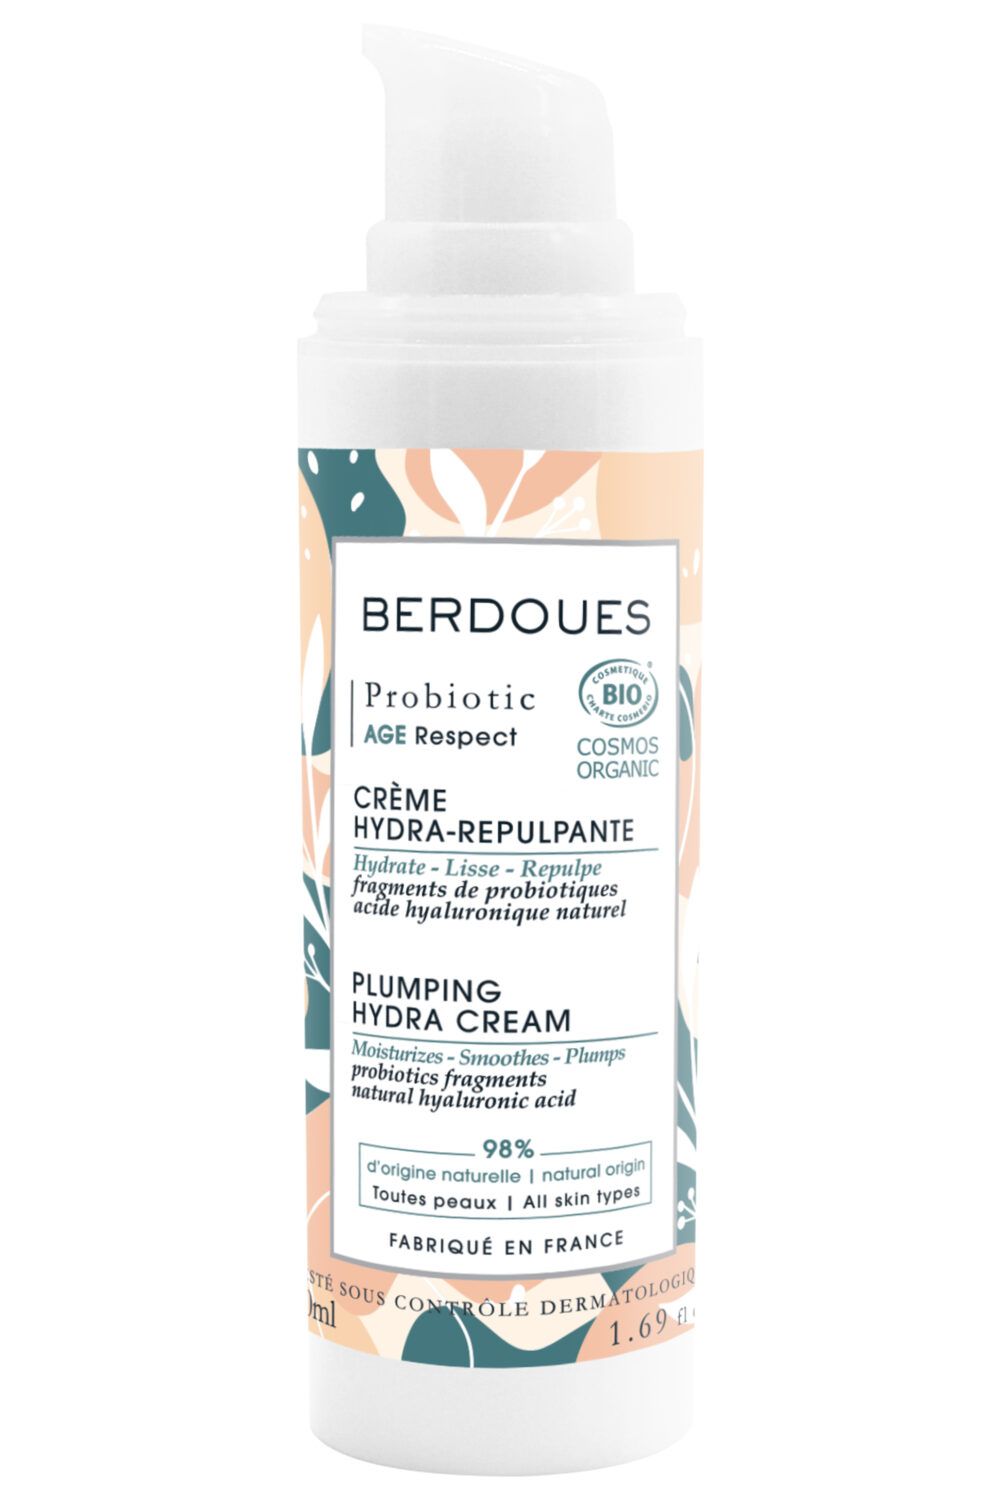 Berdoues - Crème hydra-repulpante Probiotic